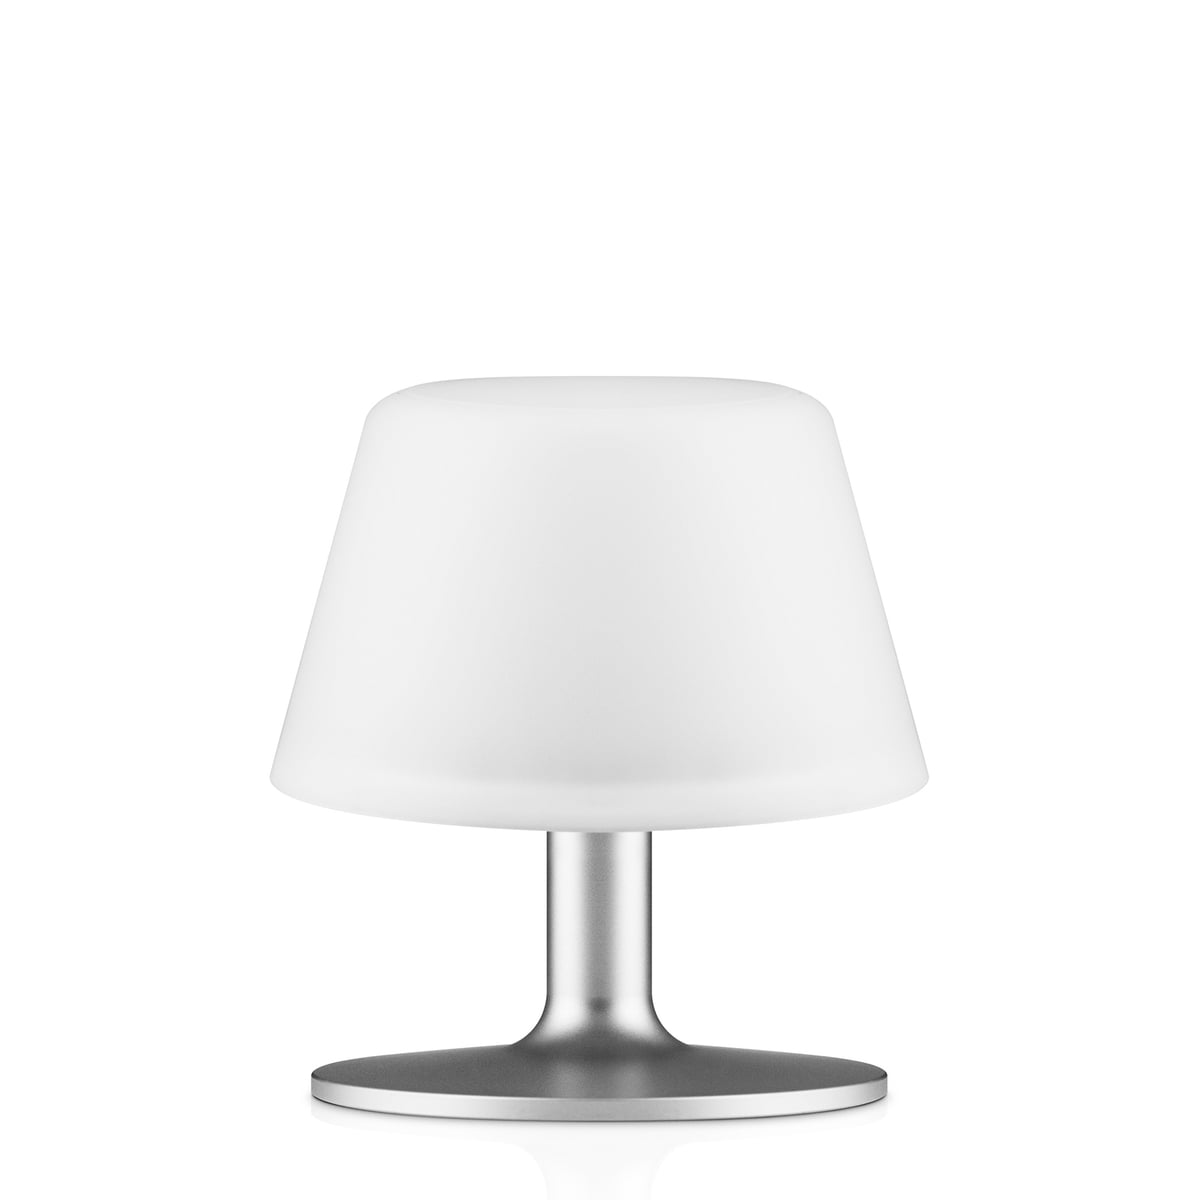 eva solo - sunlight lampe de table de jardin avec abat-jour en verre, ø 13 x h 13,5 cm, blanc